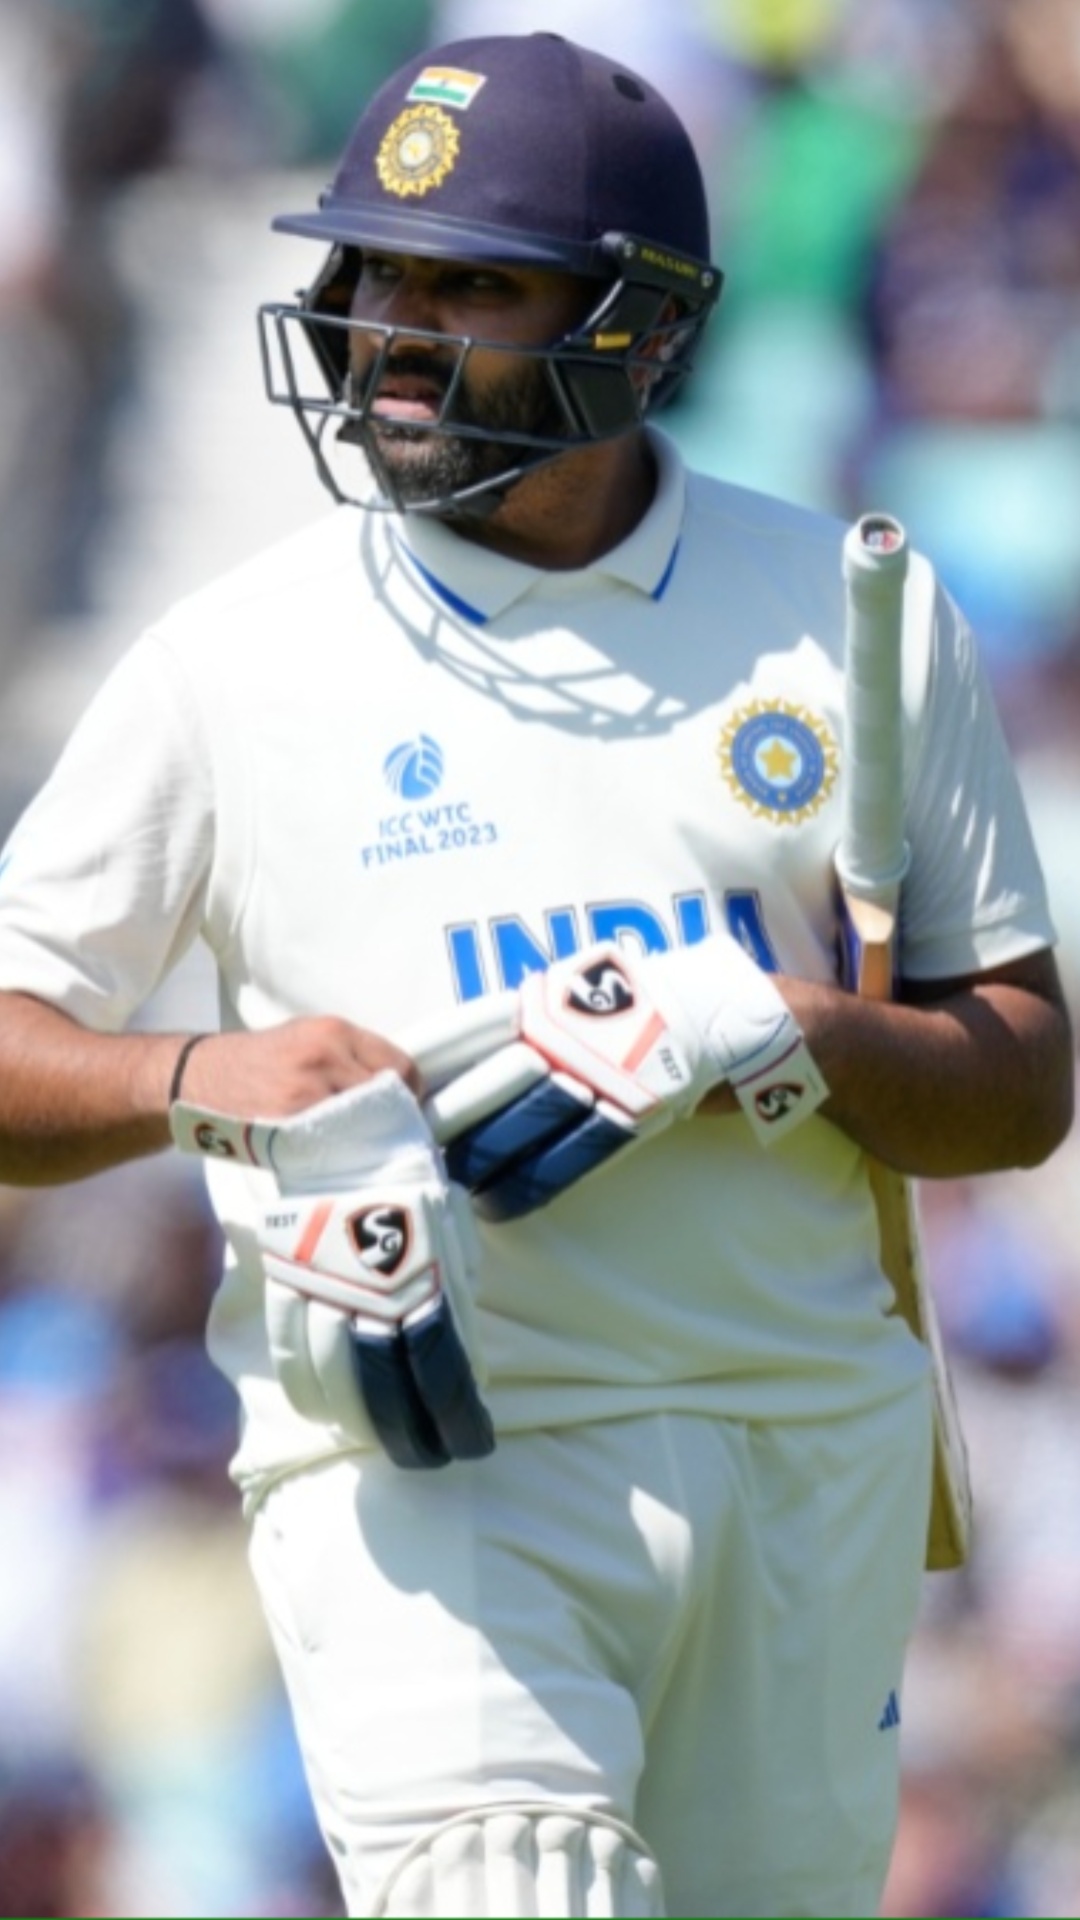 ICC के नॉकआउट या फाइनल मैच में रोहित शर्मा का प्रदर्शन